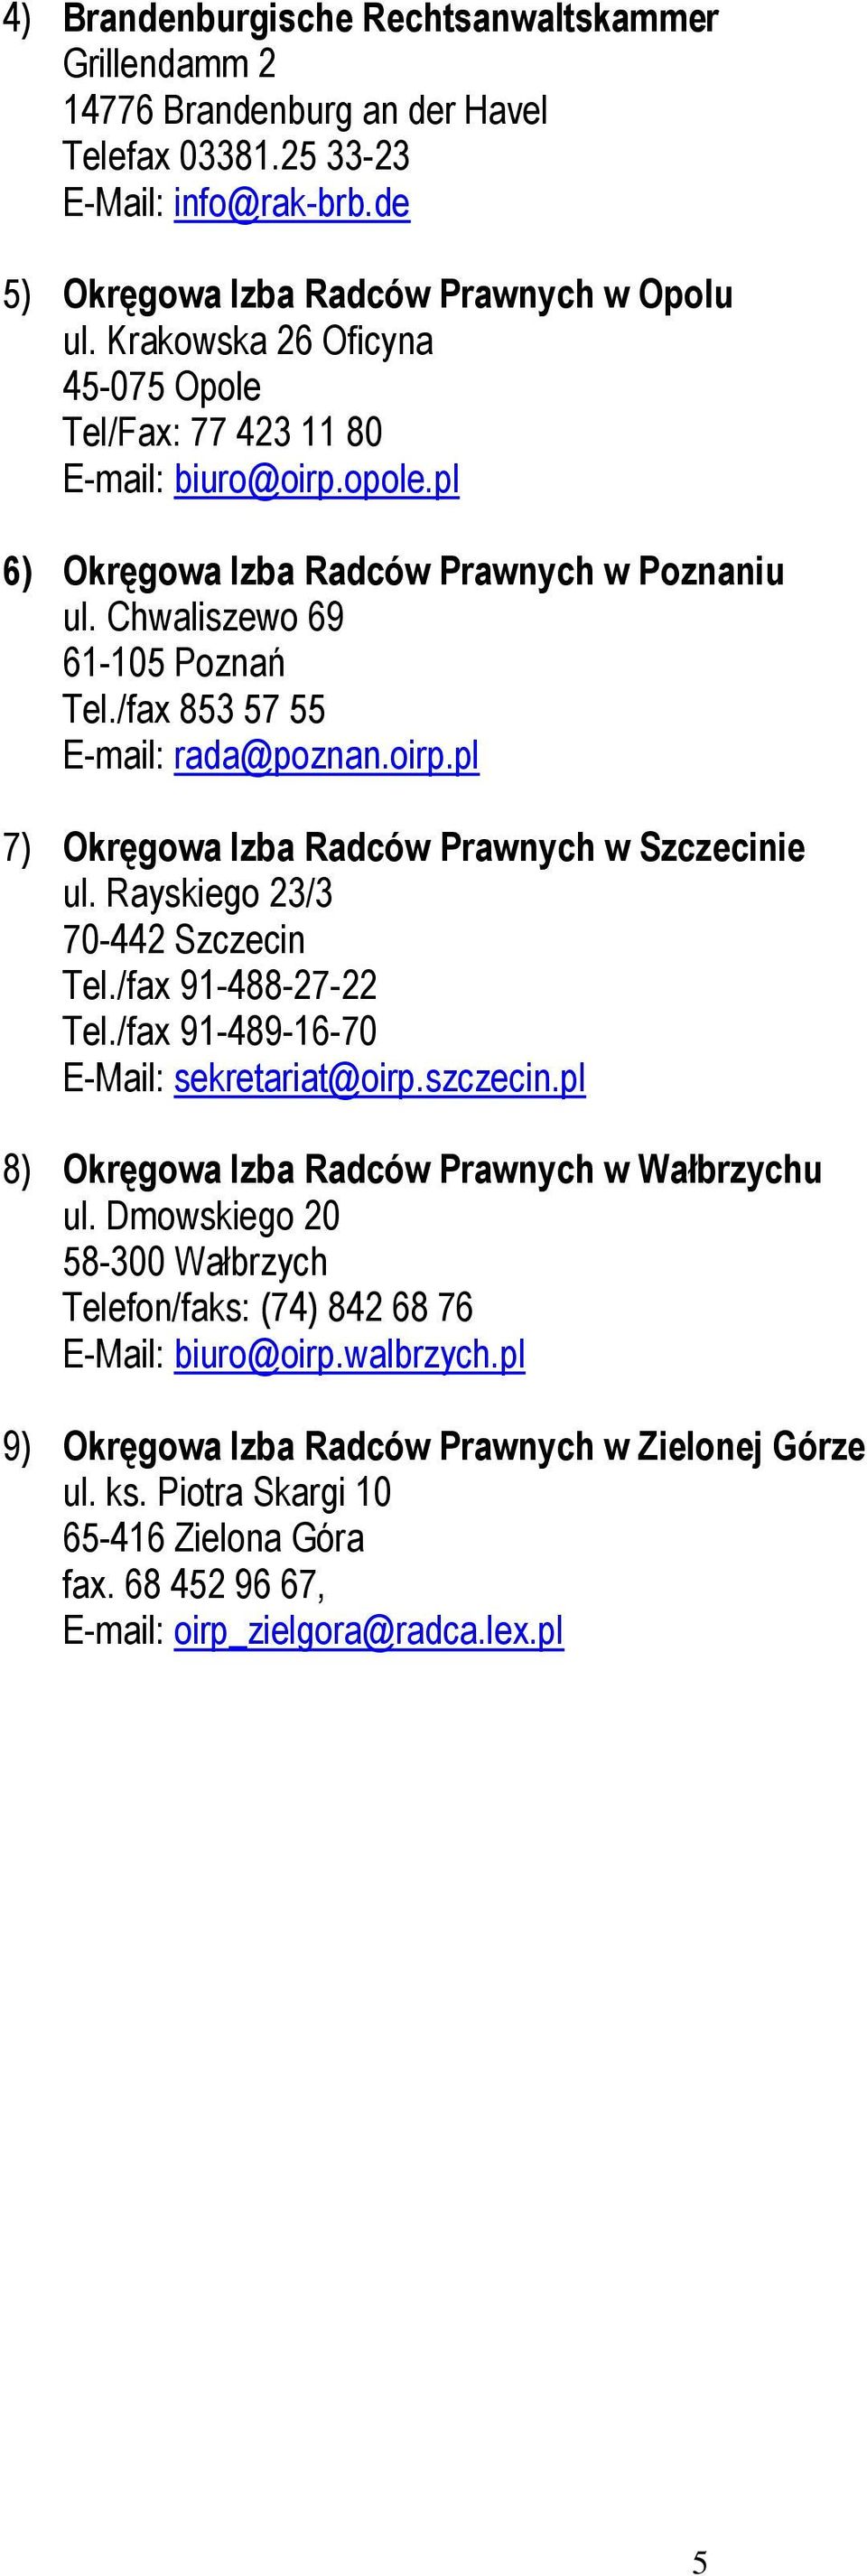 oirp.pl 7) Okręgowa Izba Radców Prawnych w Szczecinie ul. Rayskiego 23/3 70-442 Szczecin Tel./fax 91-488-27-22 Tel./fax 91-489-16-70 E-Mail: sekretariat@oirp.szczecin.